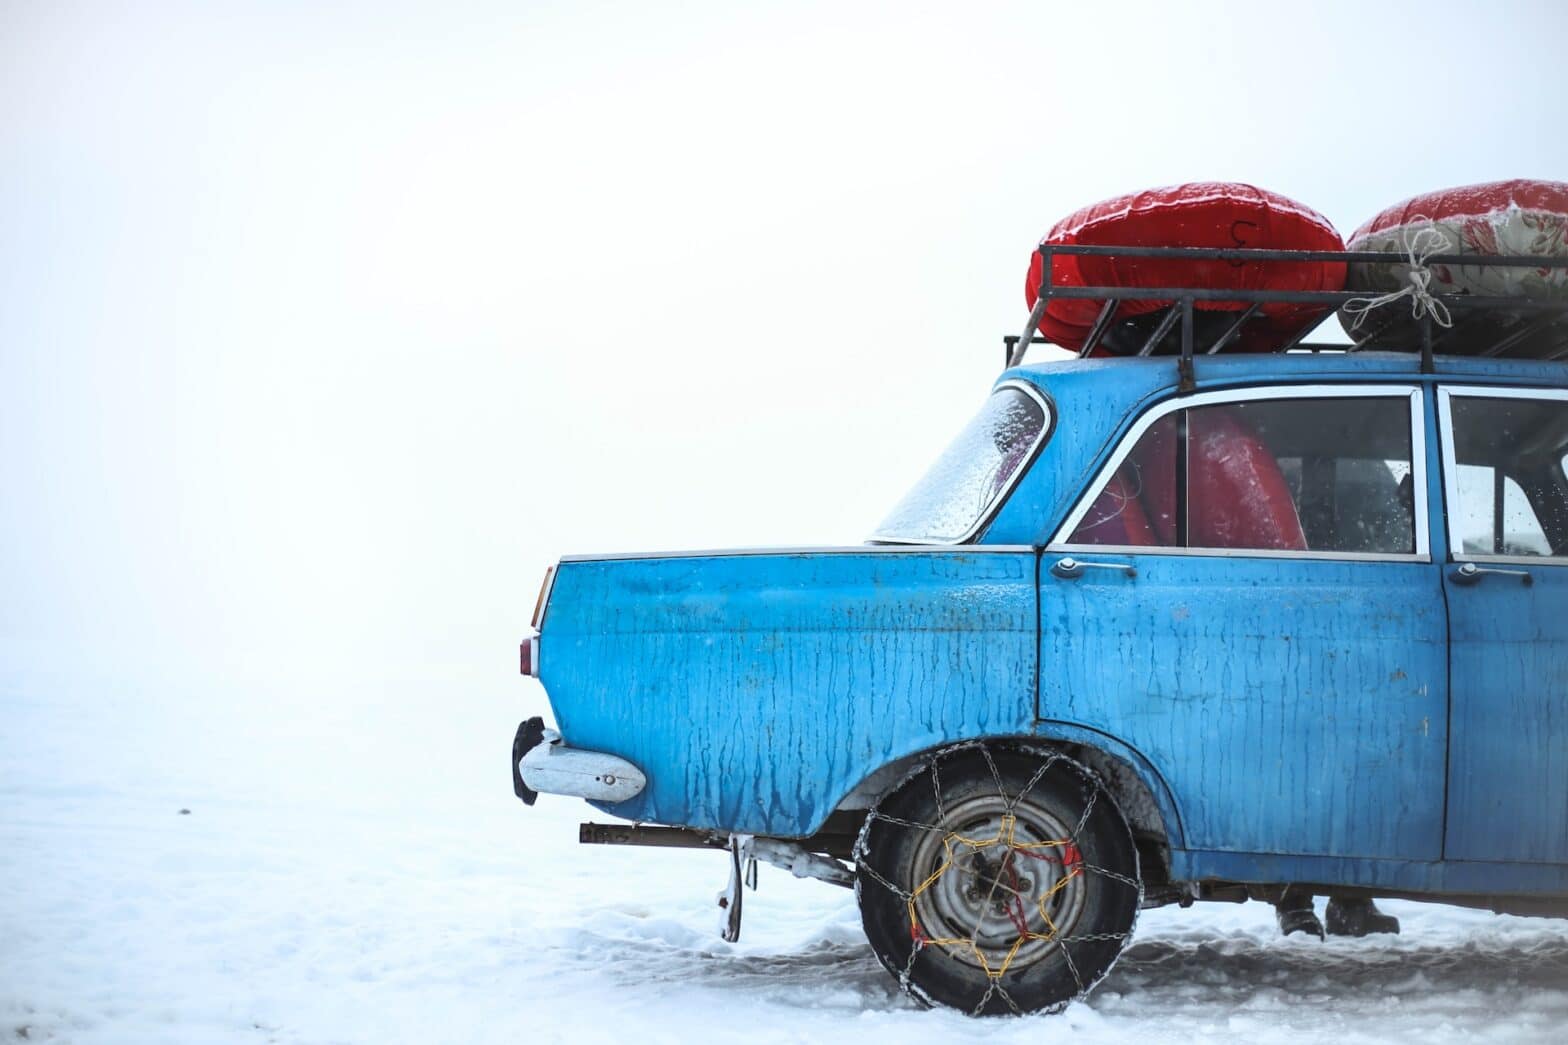 Blue Ice Chaînes à neige universelles et homologuées pour les voitures